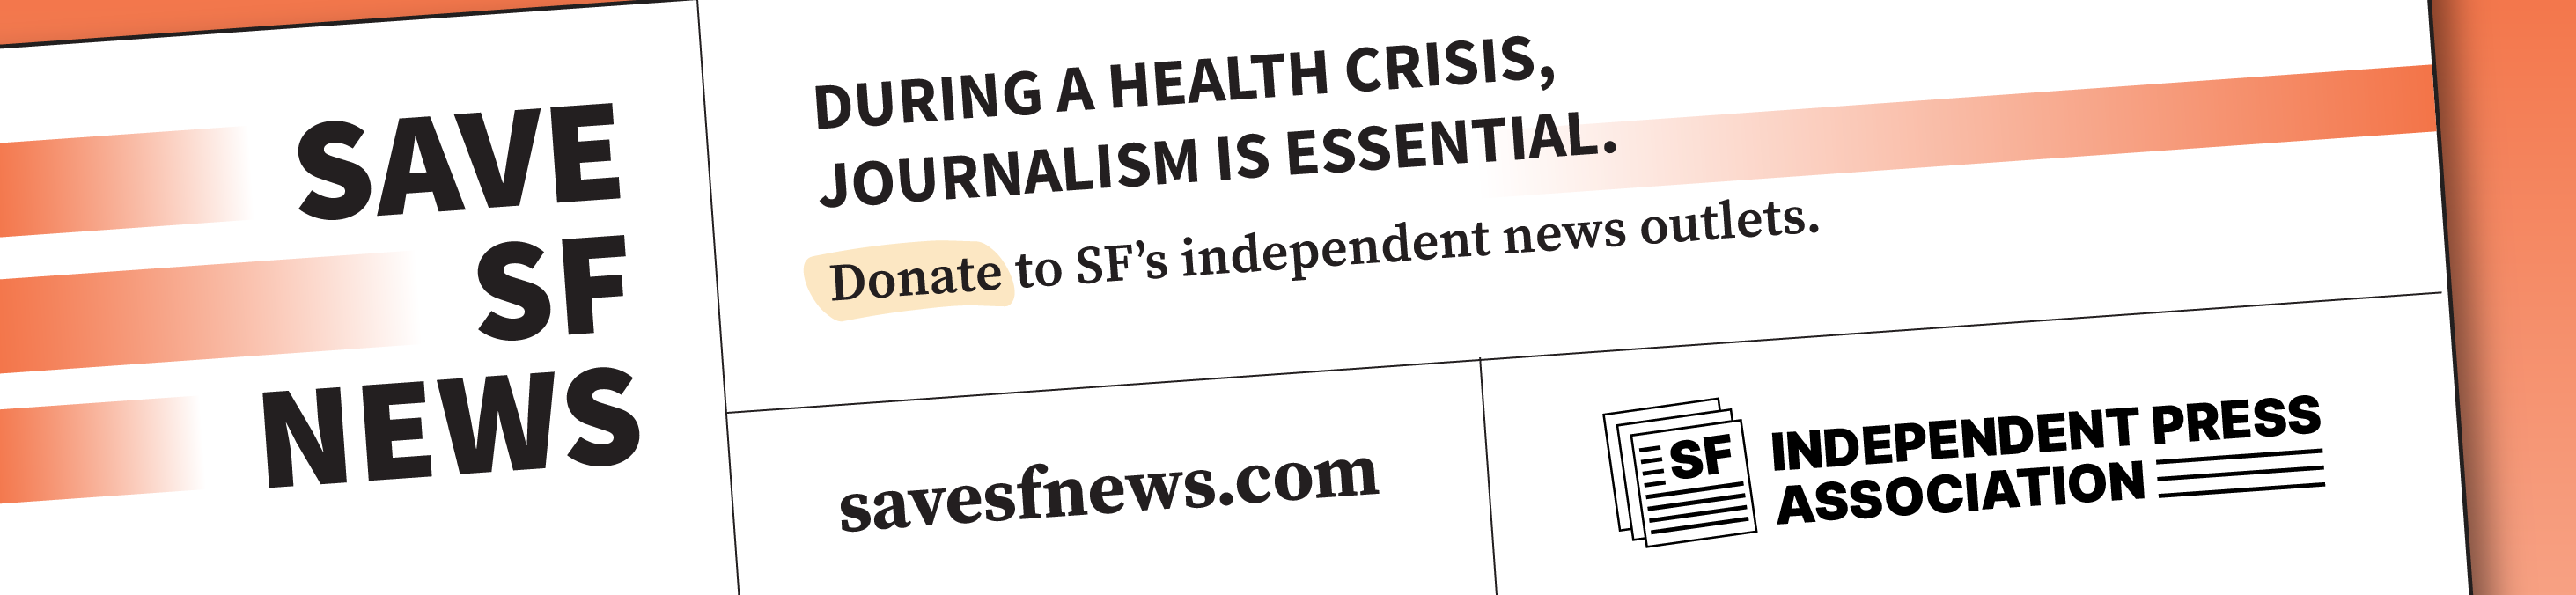 Save-SF-News